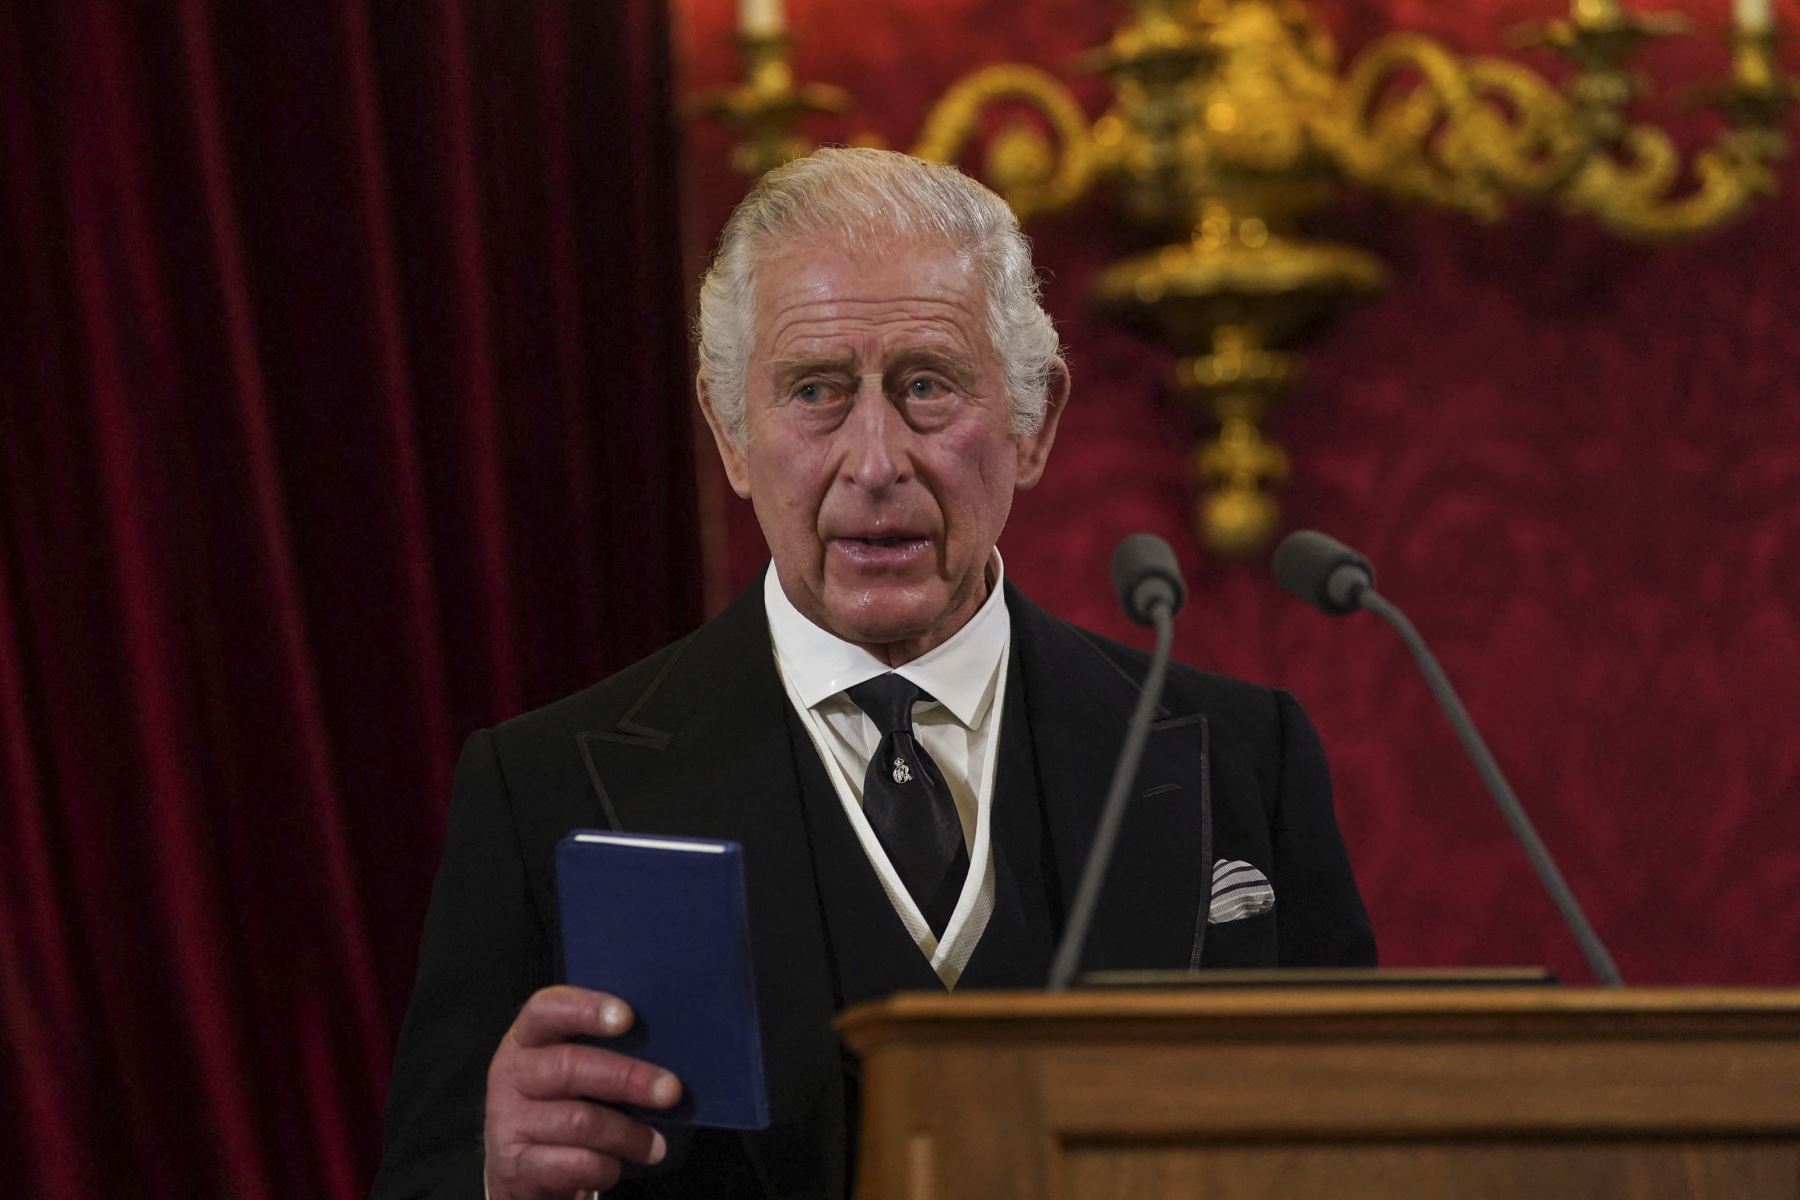 Carlos III es proclamado nuevo rey del Reino Unido